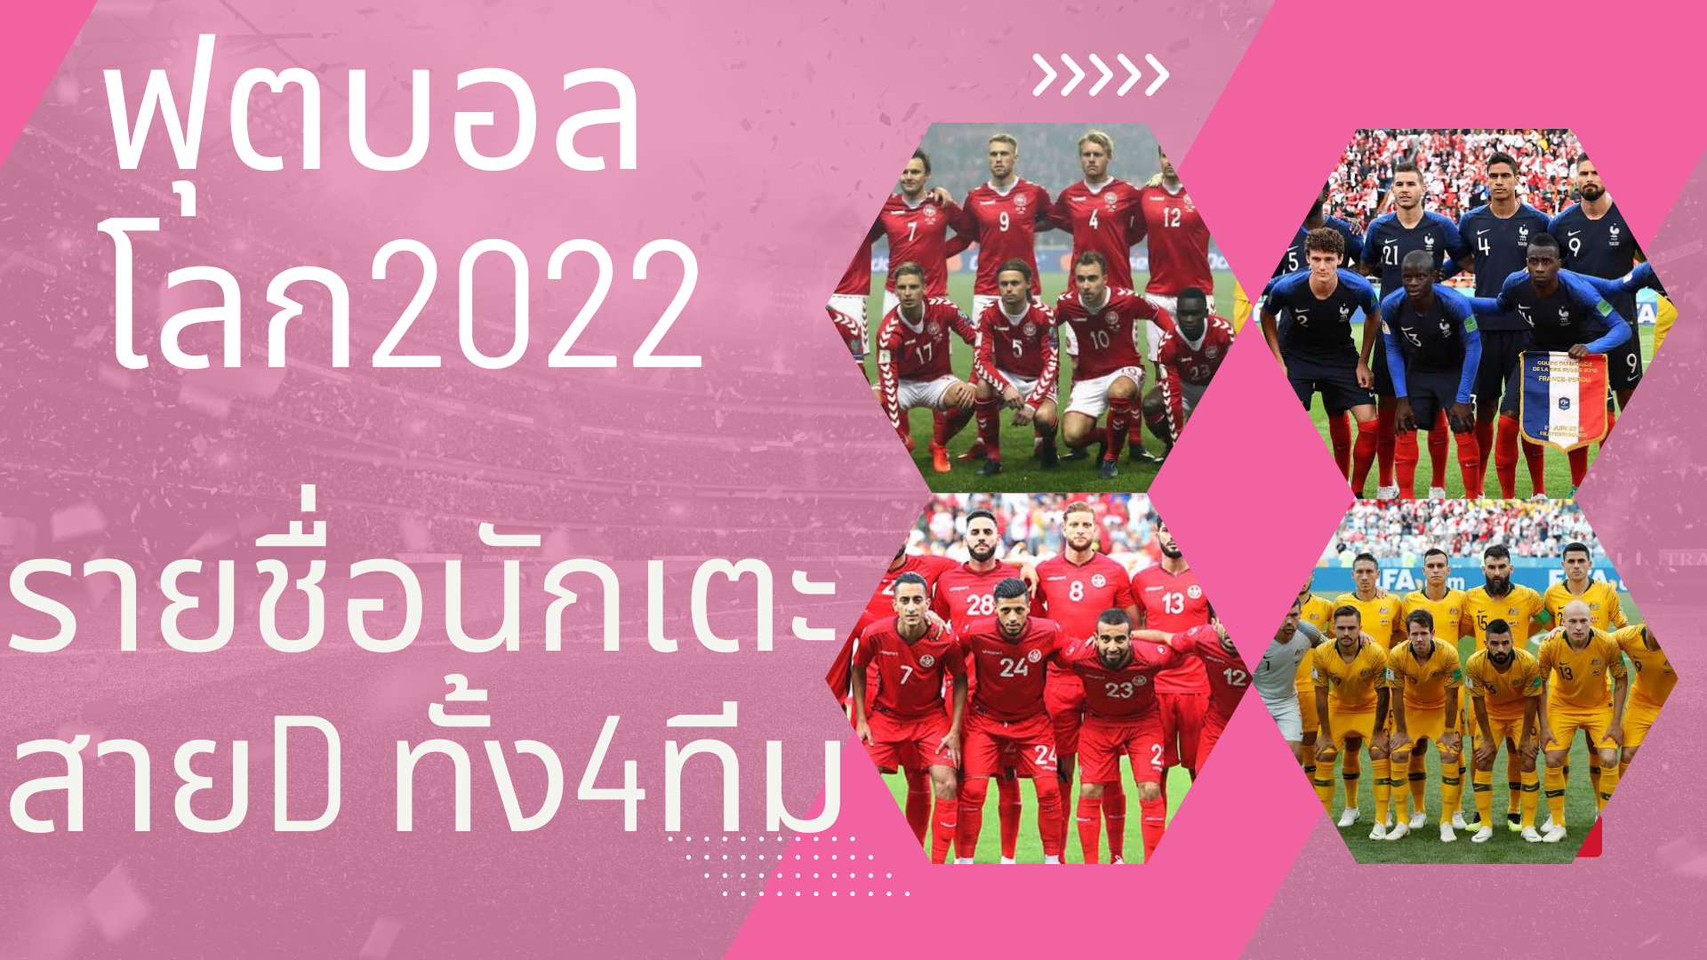 ฟุตบอลโลก2022 รายชื่อนักฟุตบอล ของทีมสาย D ทั้งหมด 4 ทีม  